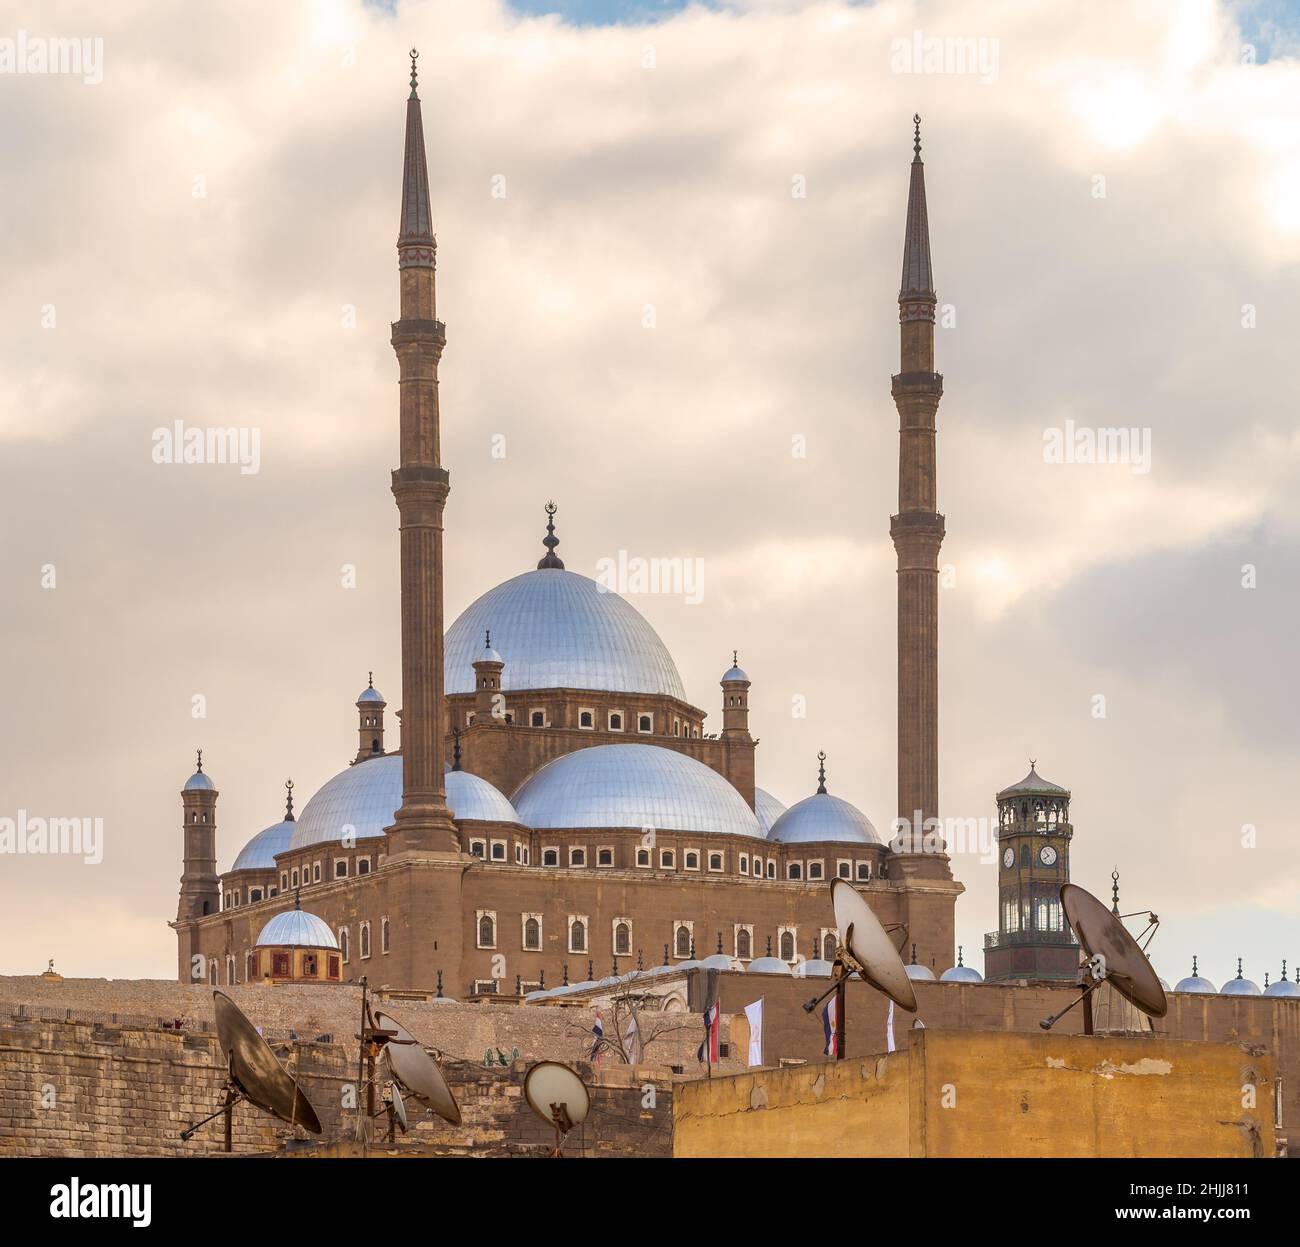 La gran Mezquita de Muhammad Ali Pasha - Mezquita de Alabastro - situado en la Ciudadela de el Cairo en Egipto, encargado por Muhammad Ali Pasha, uno de los monumentos y atracciones turísticas de el Cairo Foto de stock